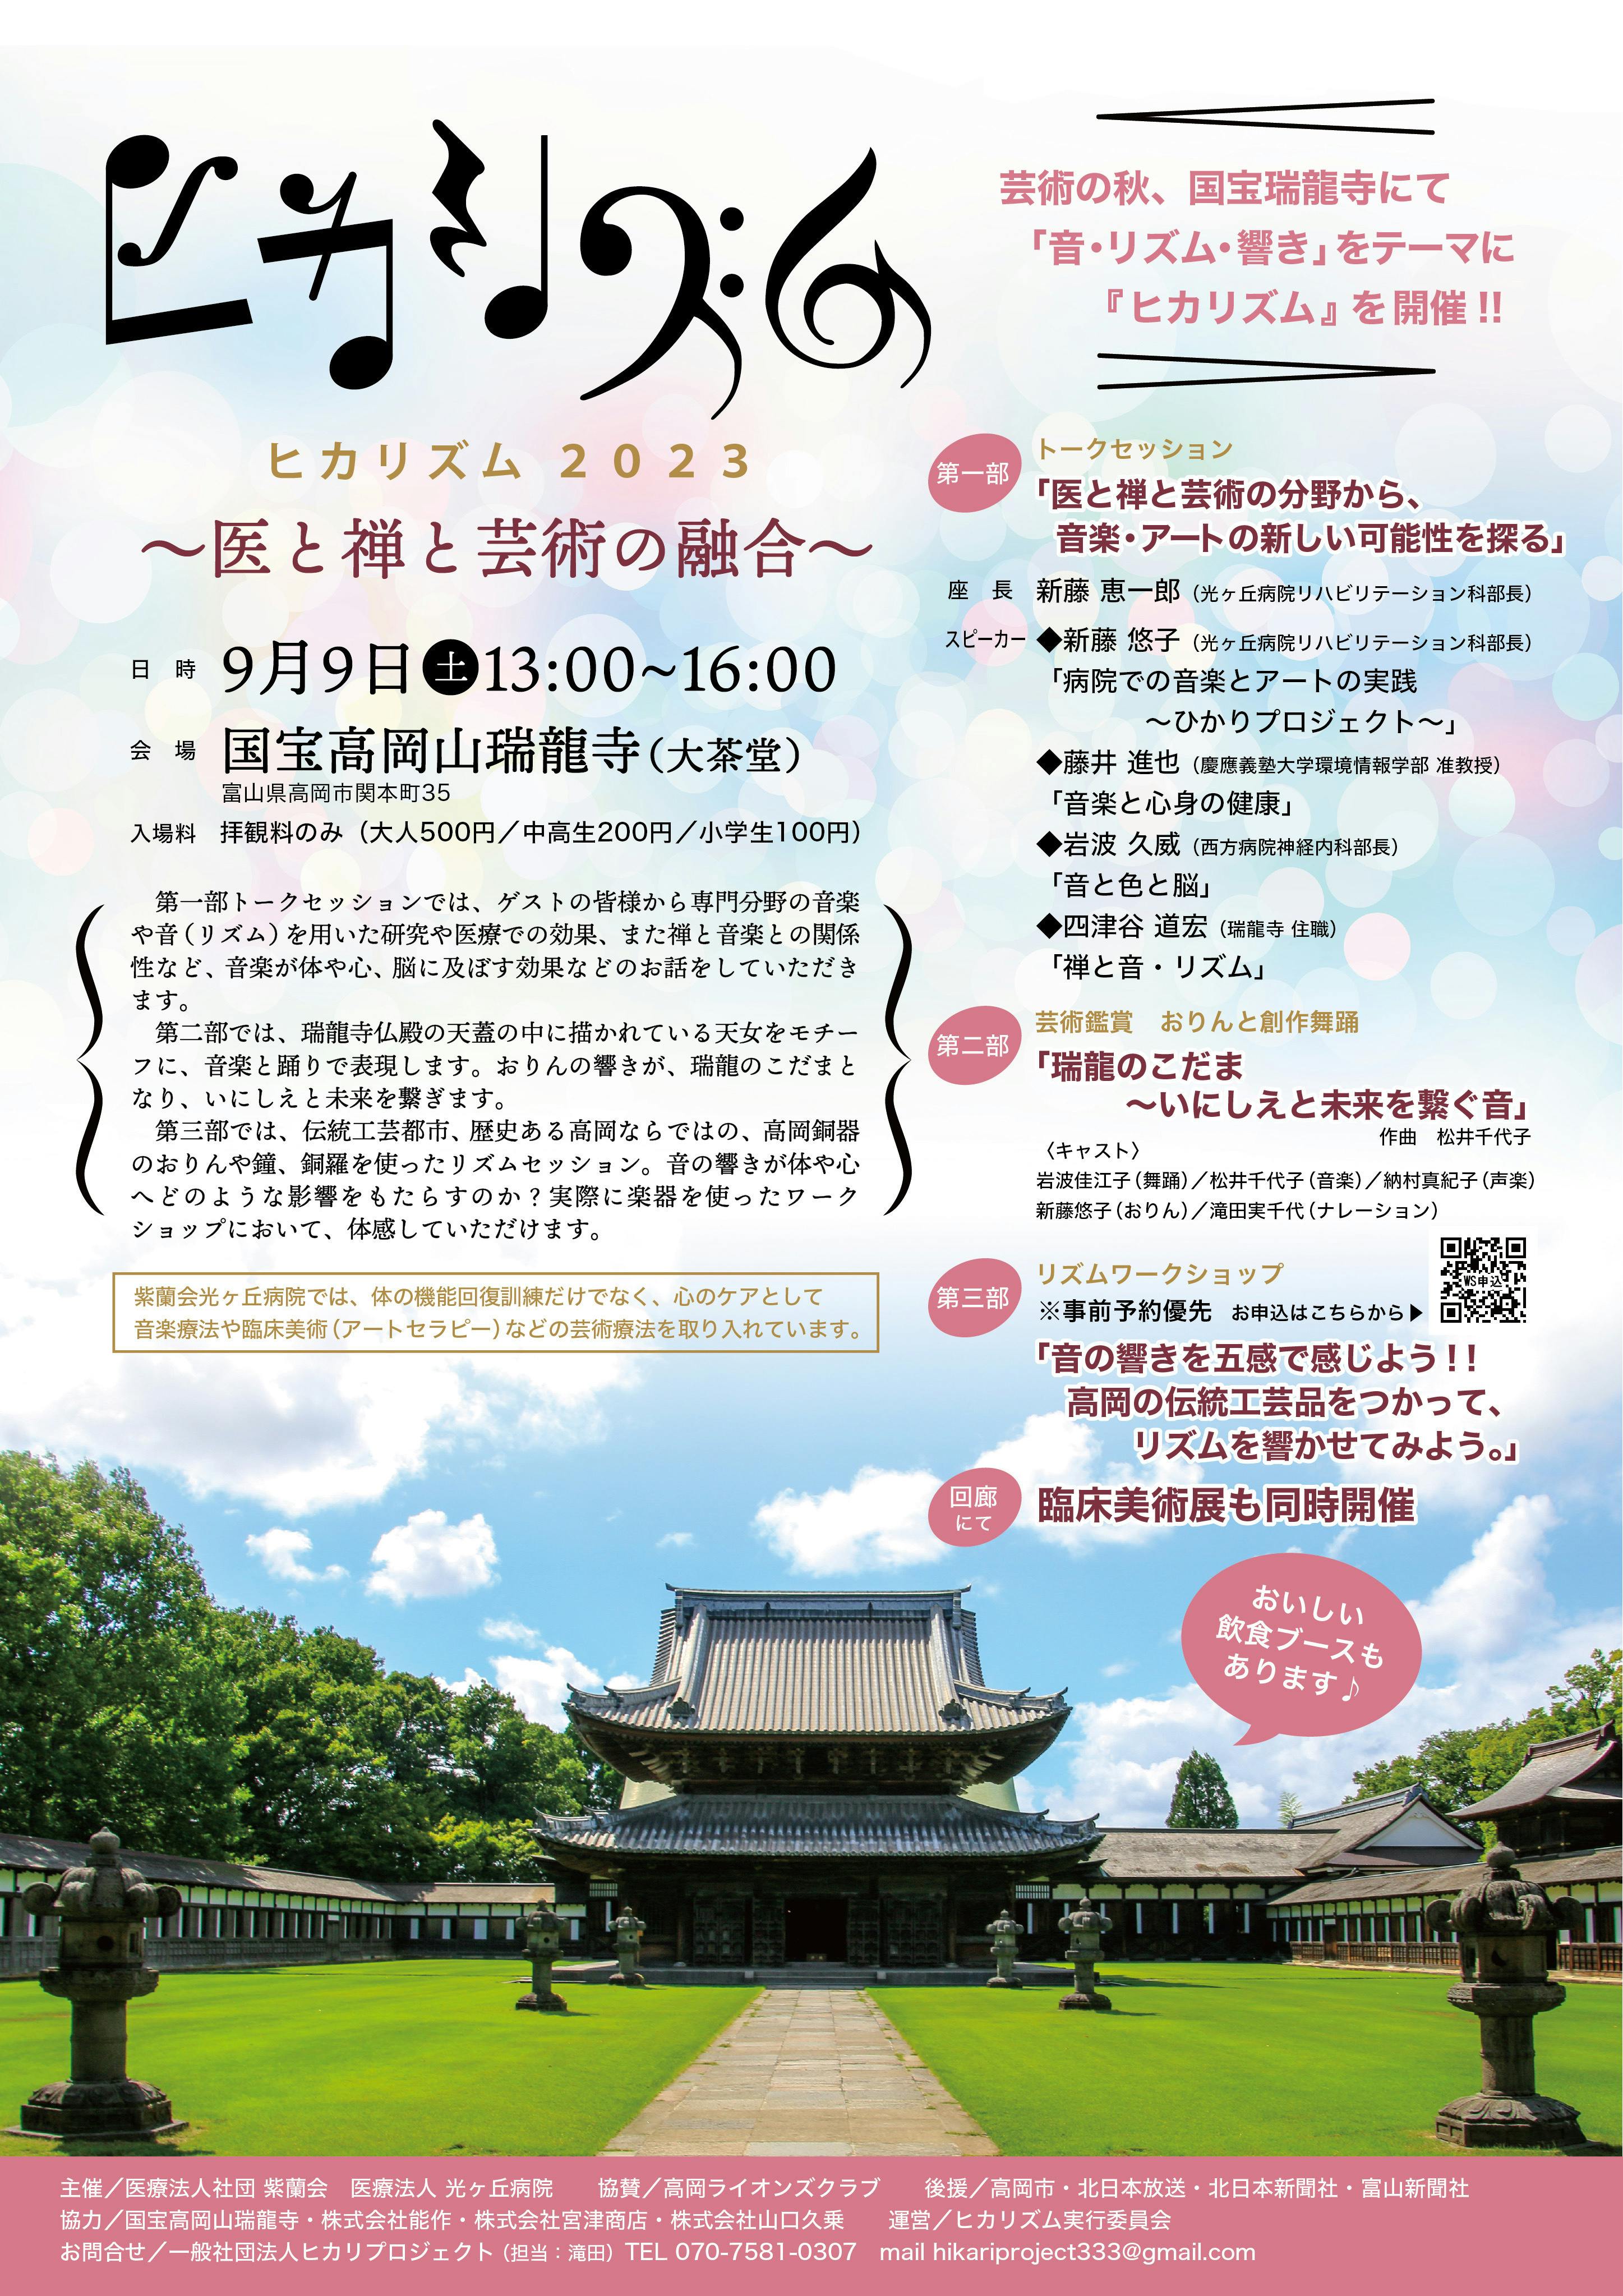 国宝瑞龍寺イベント「ヒカリズム2023」〜医と禅と芸術の融合〜2023年9